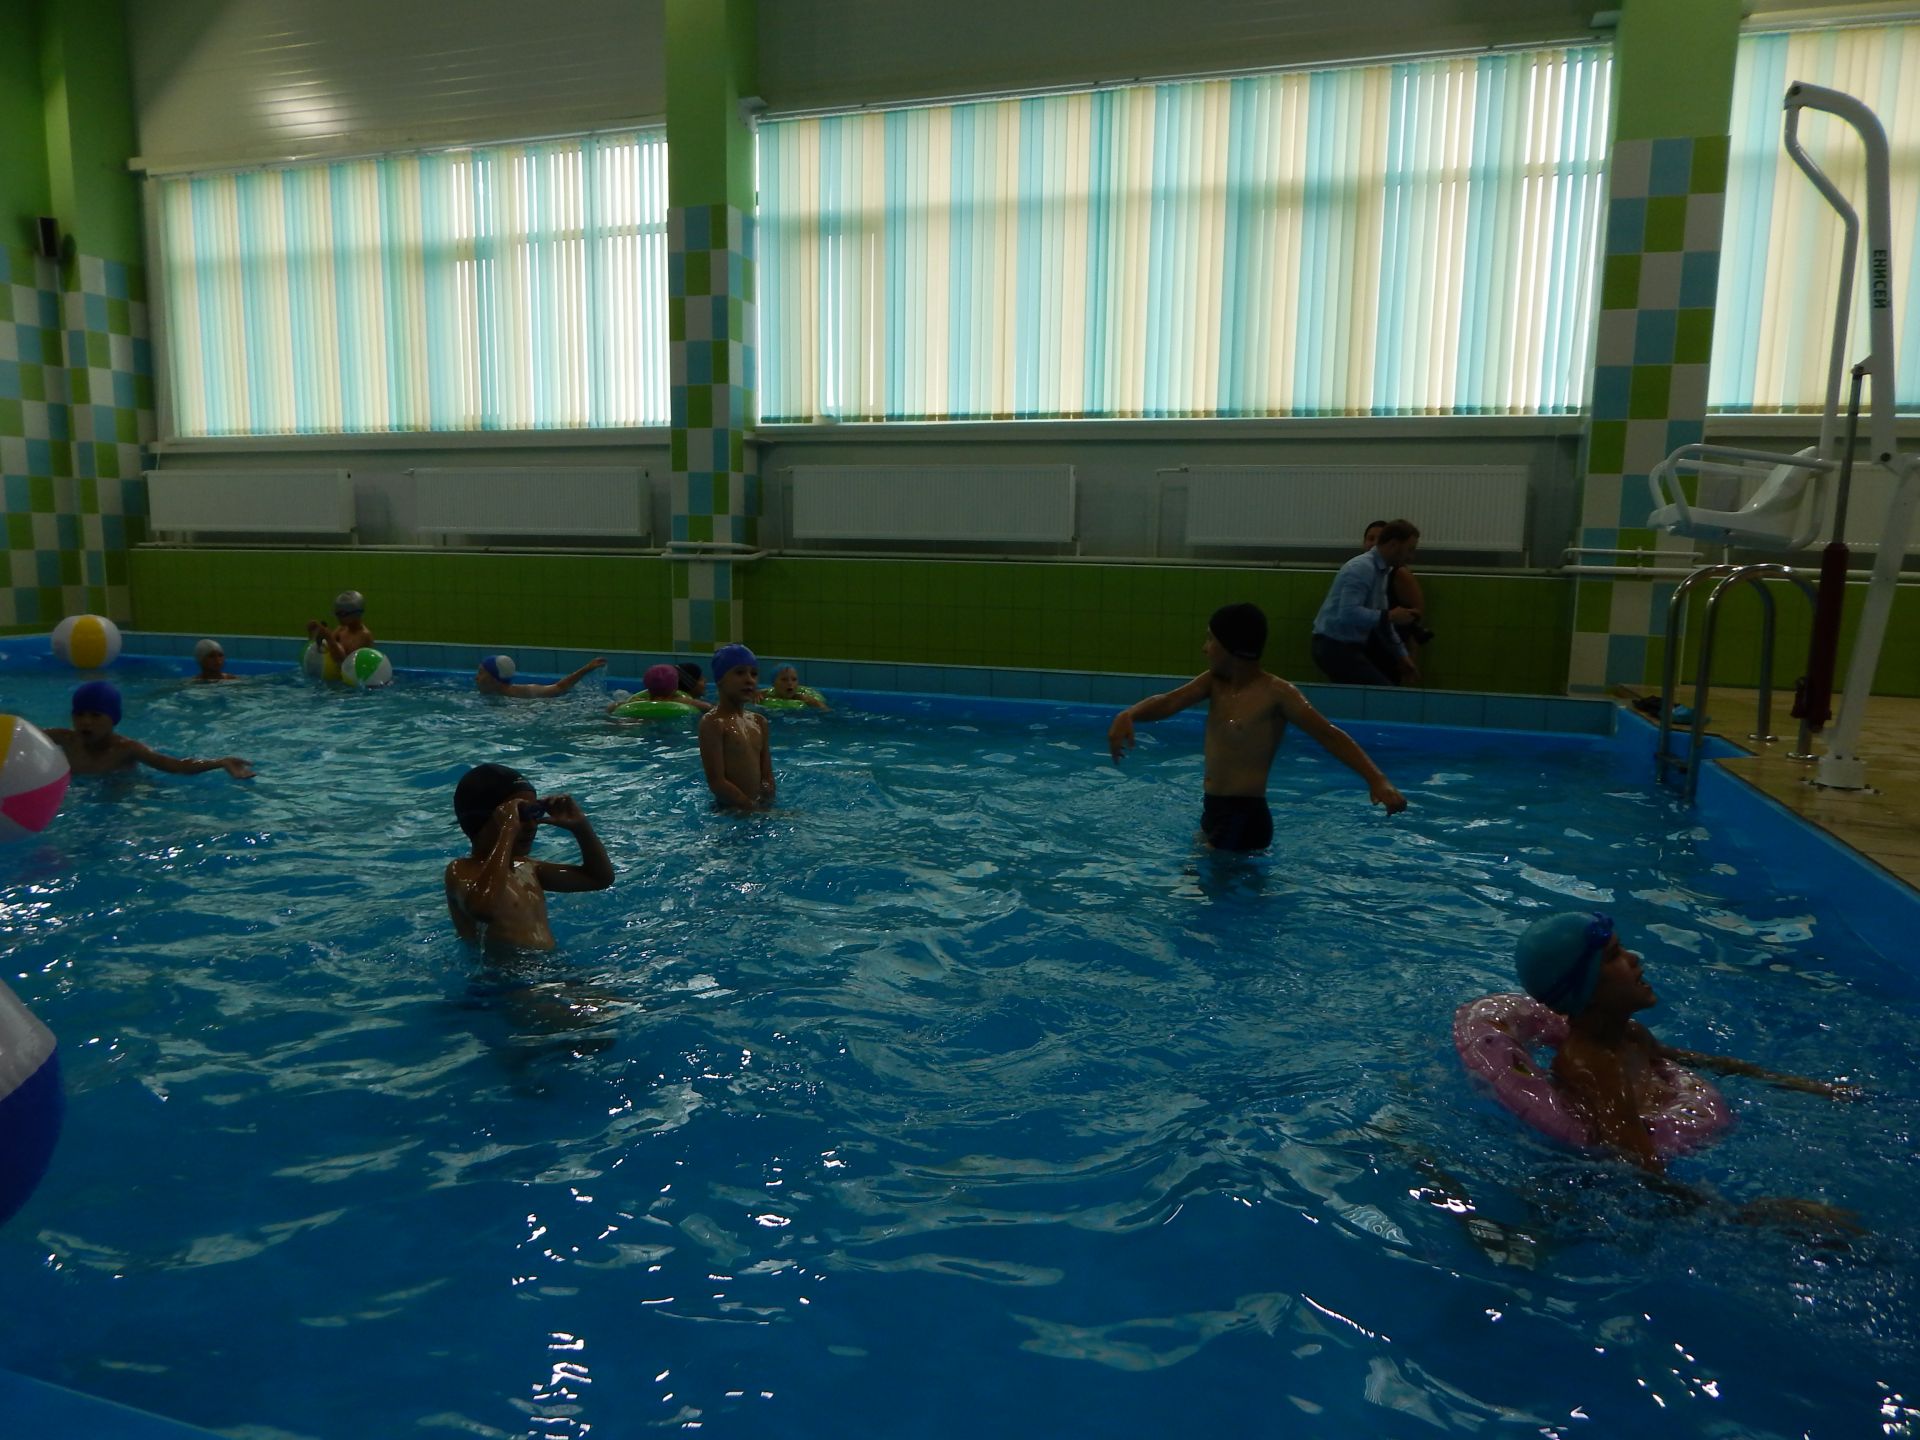 В Камских Полянах состоялось торжественное открытие плавательного бассейна «Аквамарин»